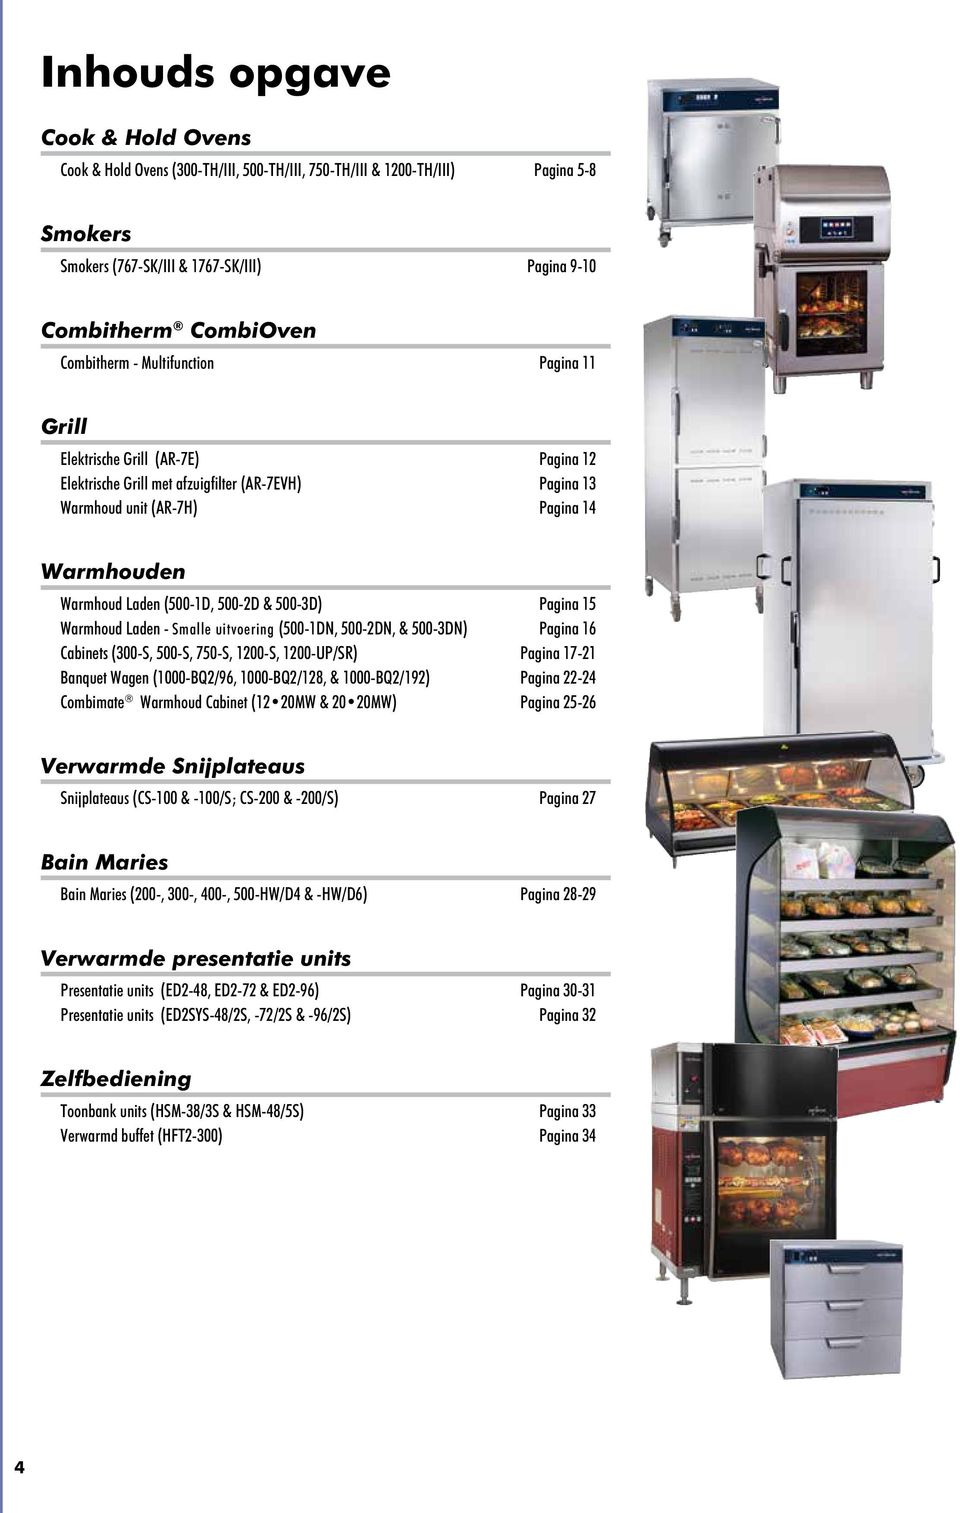 Warmhoud Laden - Smalle uitvoering (500-1DN, 500-2DN, & 500-3DN) Pagina 16 Cabinets (300-S, 500-S, 750-S, 1200-S, 1200-UP/SR) Pagina 17-21 Banquet Wagen (1000-BQ2/96, 1000-BQ2/128, & 1000-BQ2/192)